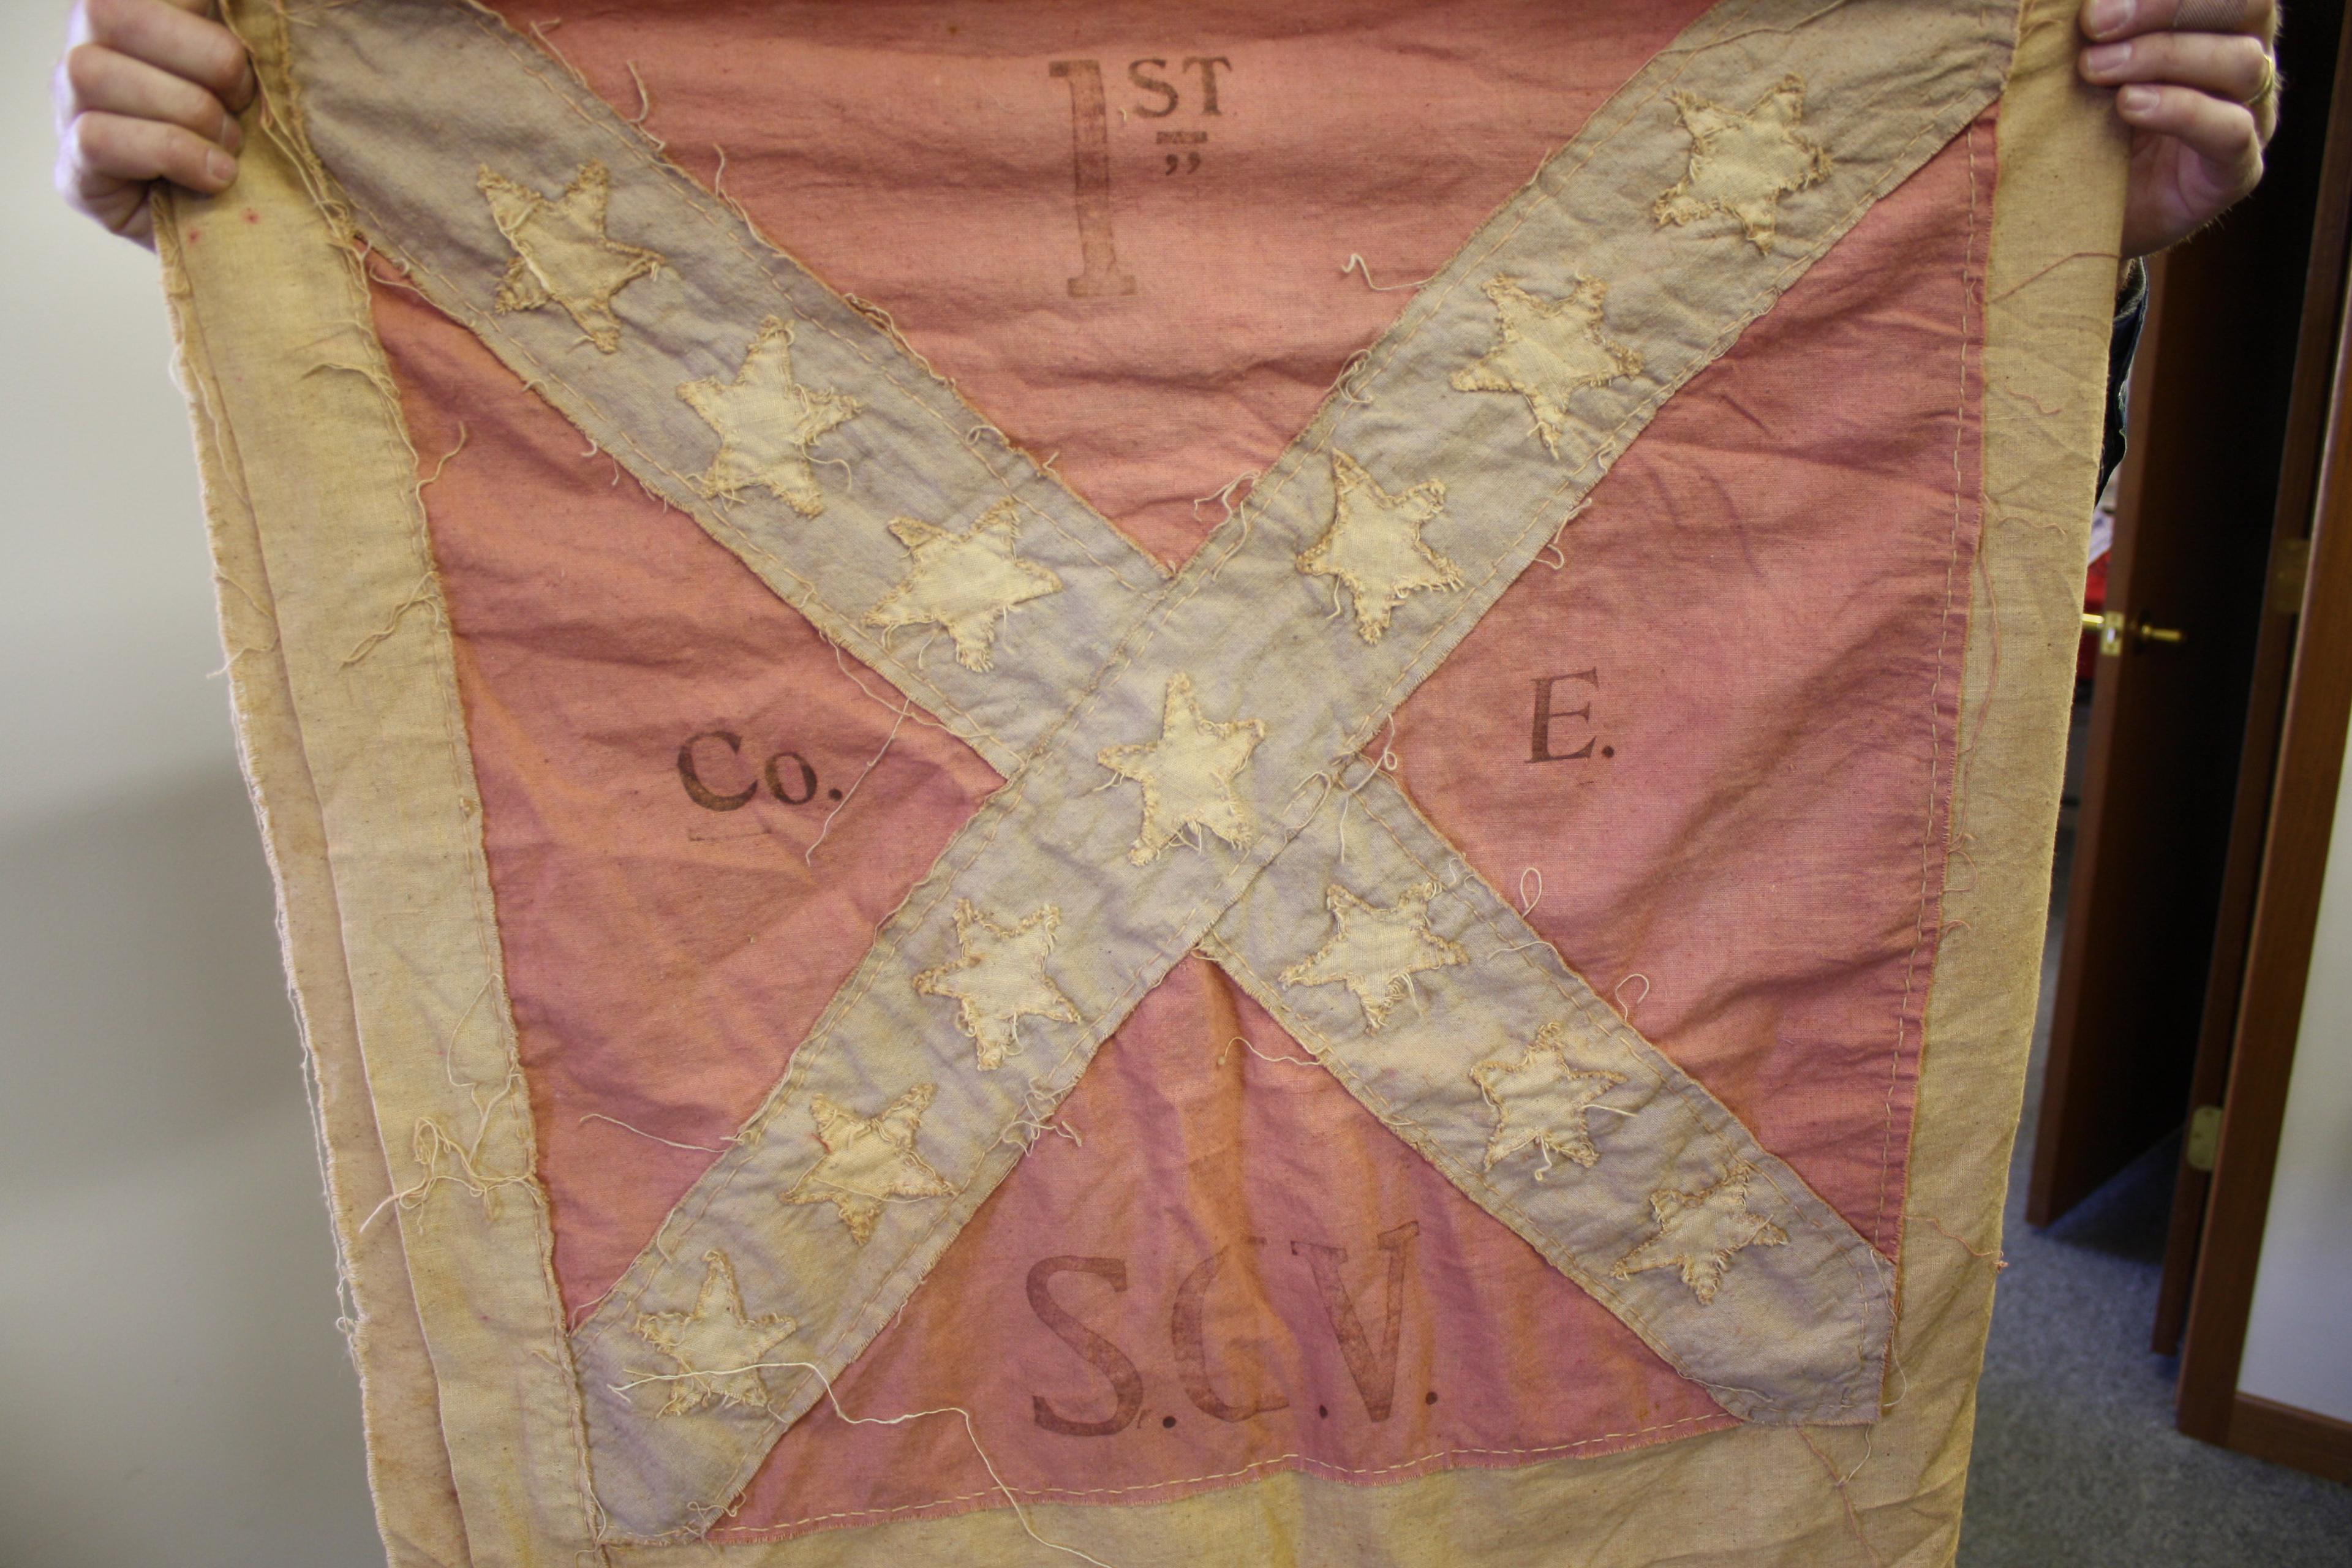 1st Savannah Georgia Volunteers Company E Confederate Flag